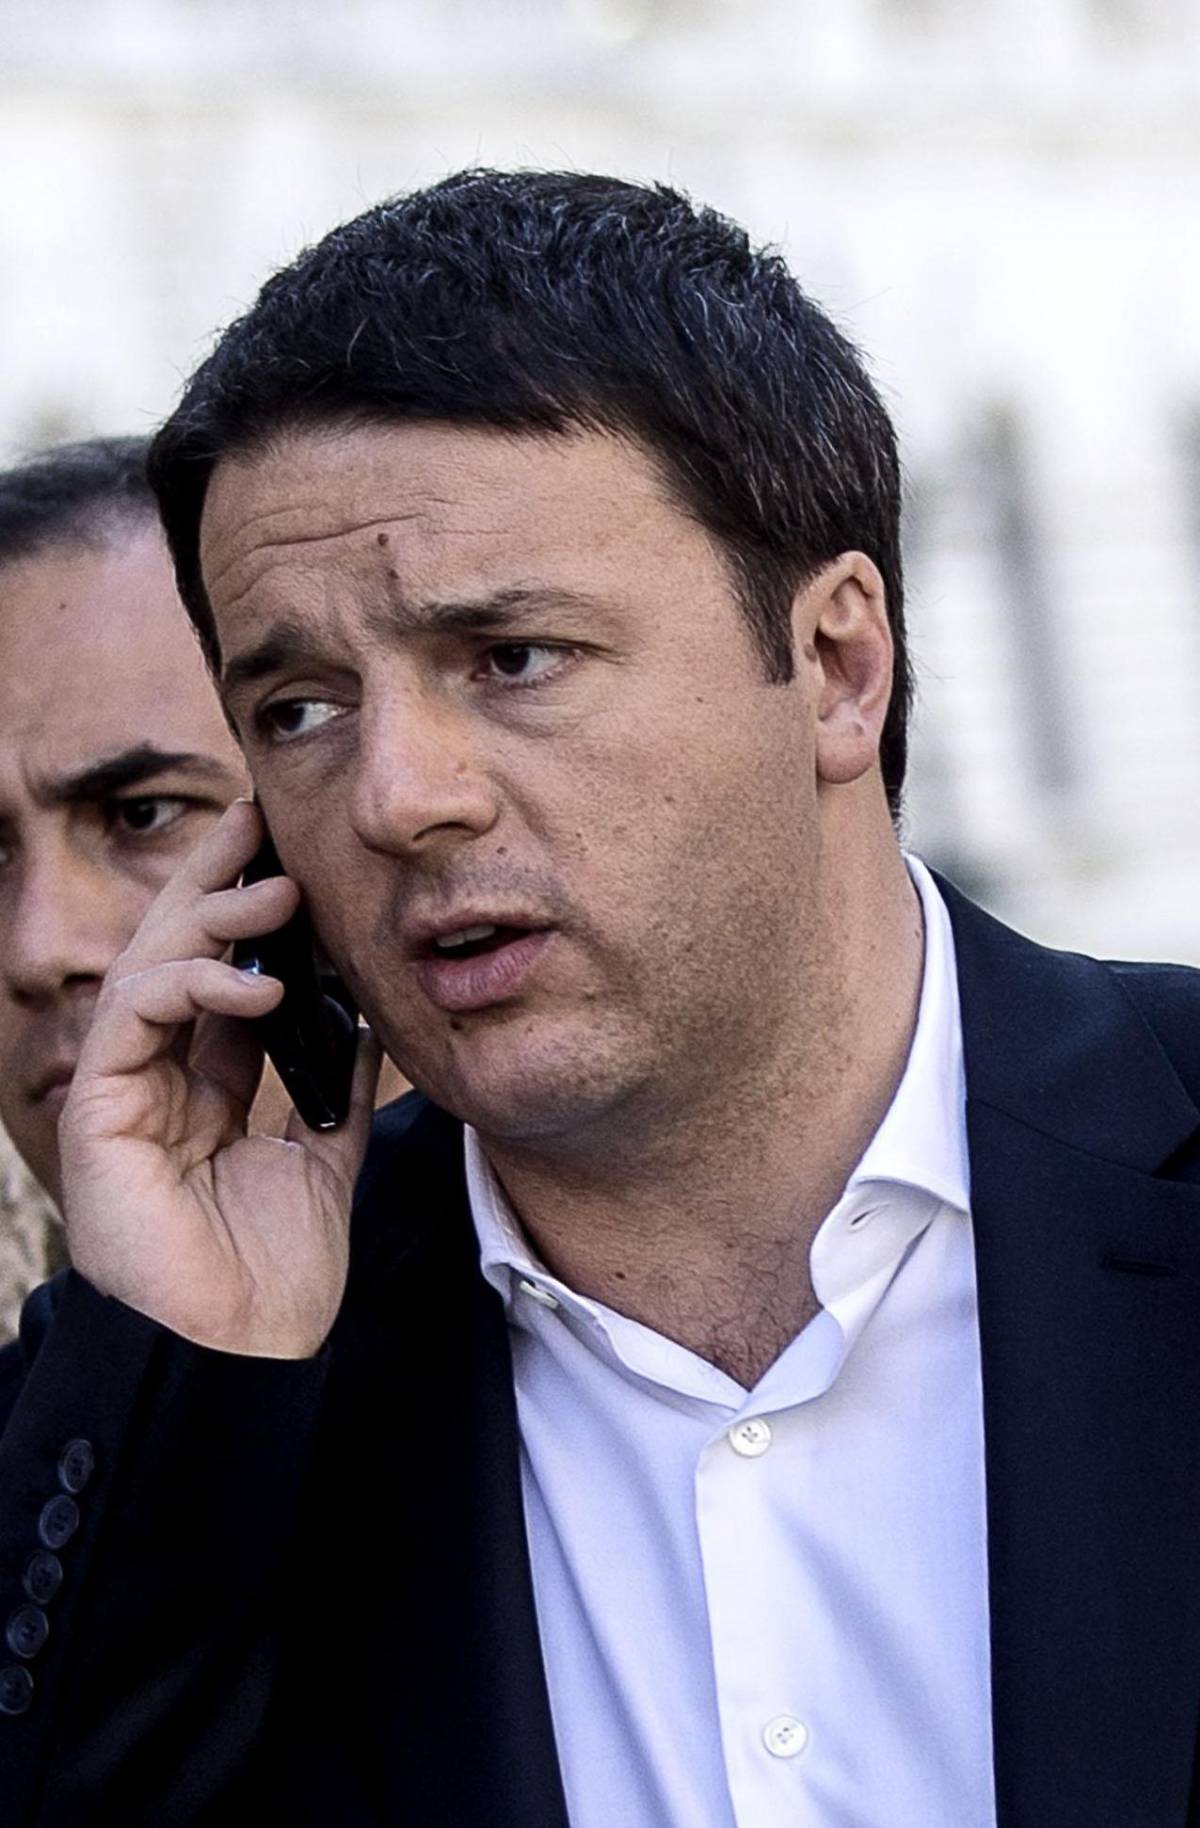 Messaggio di Matteo Renzi: "Non accettiamo lezioni sulle priorità"